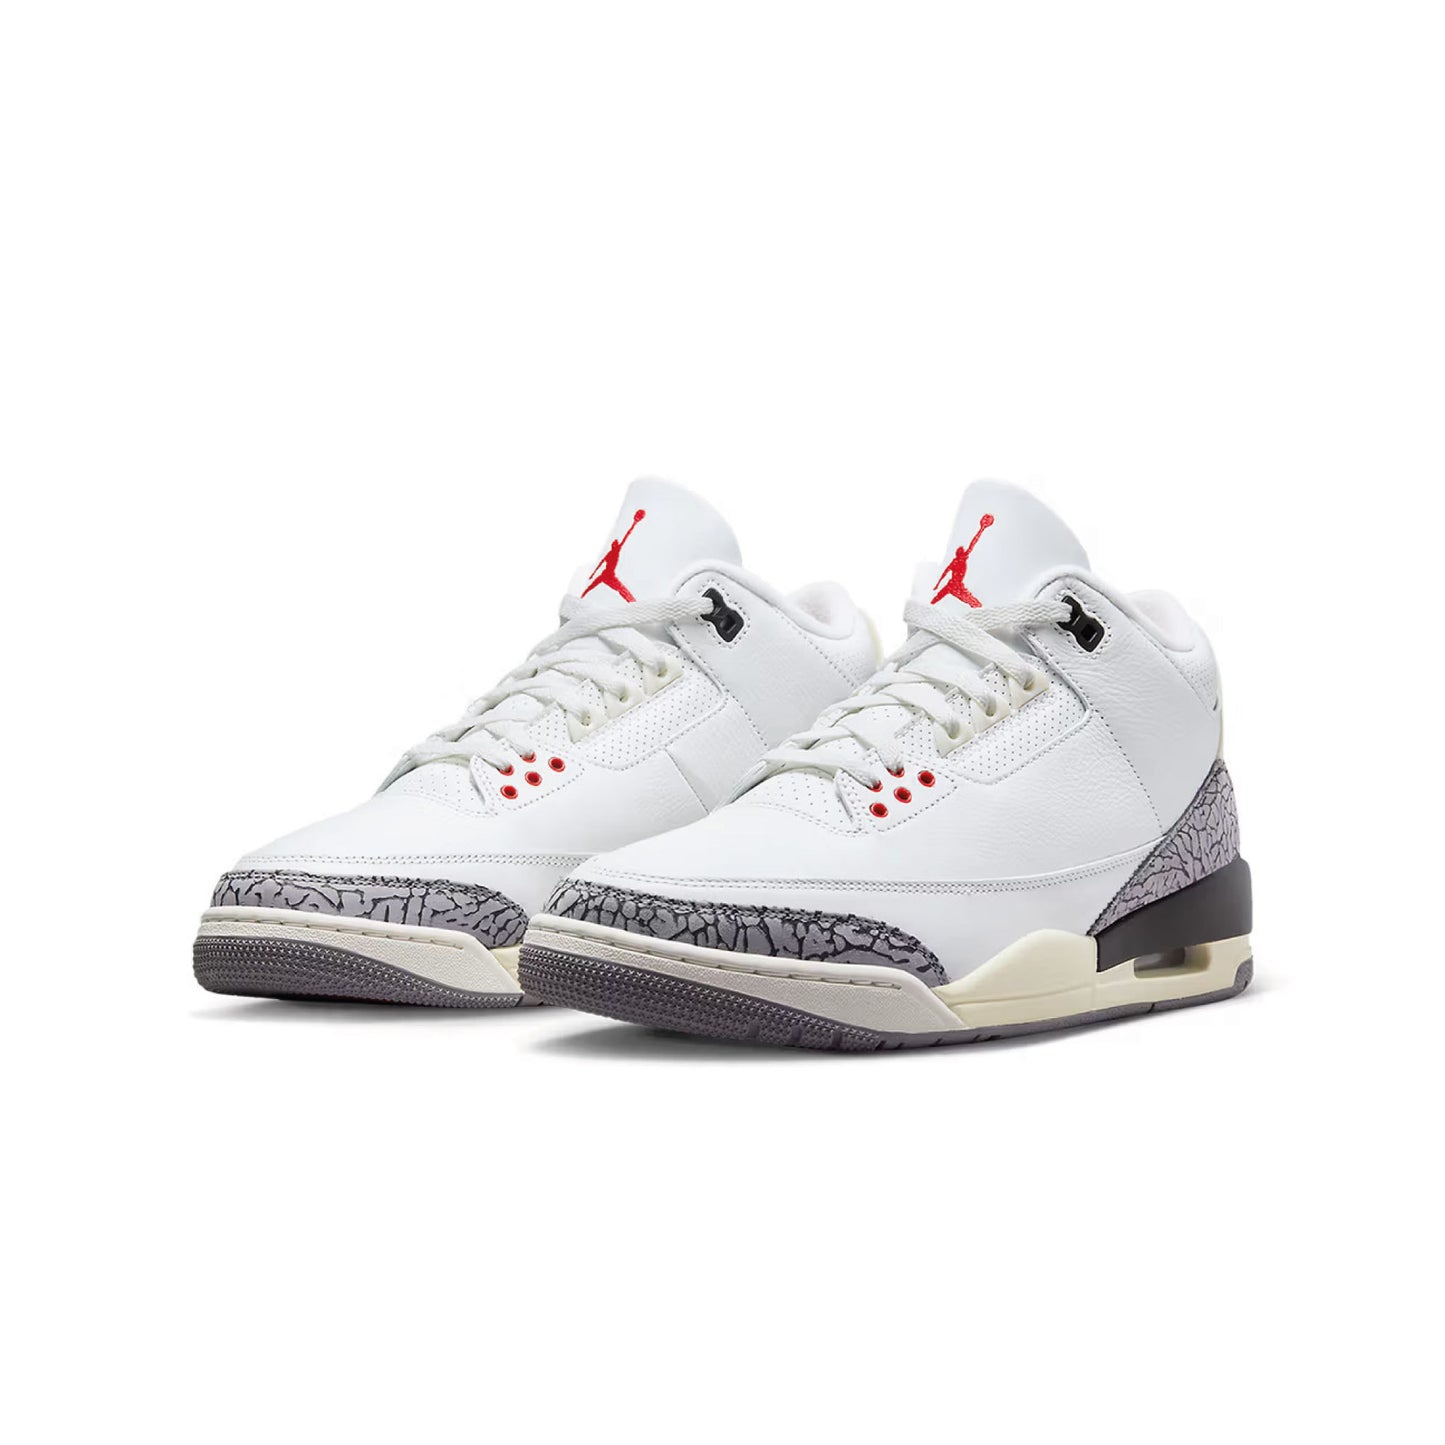 Jordan 3 Retro White Cement Reimagined